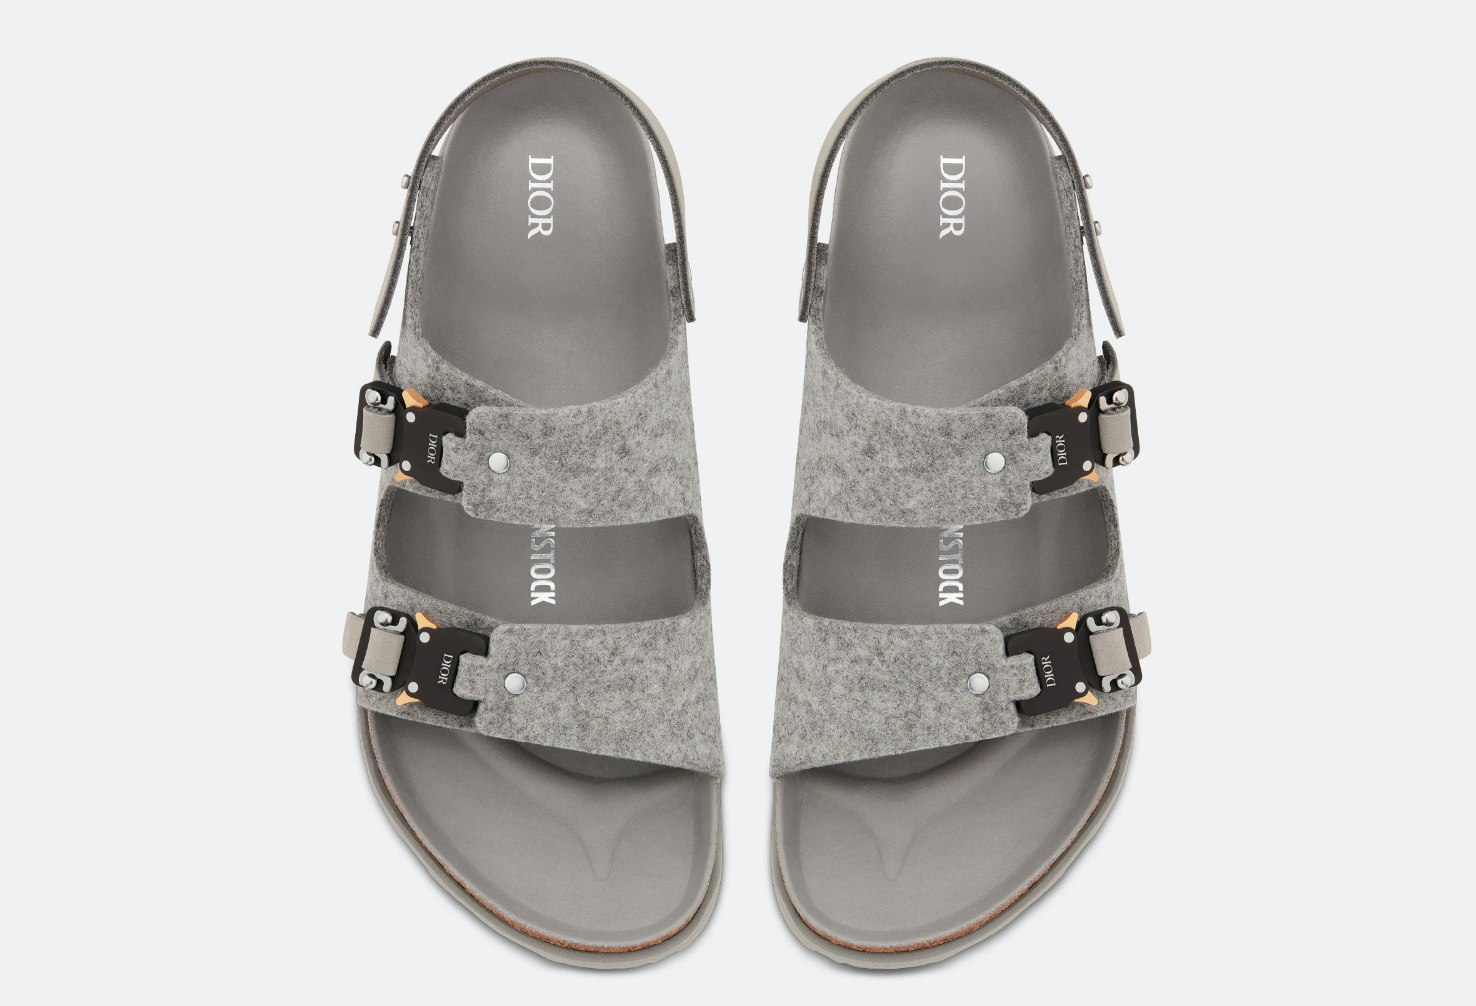 Dior x Birkenstock Milano Sandal "Grey"